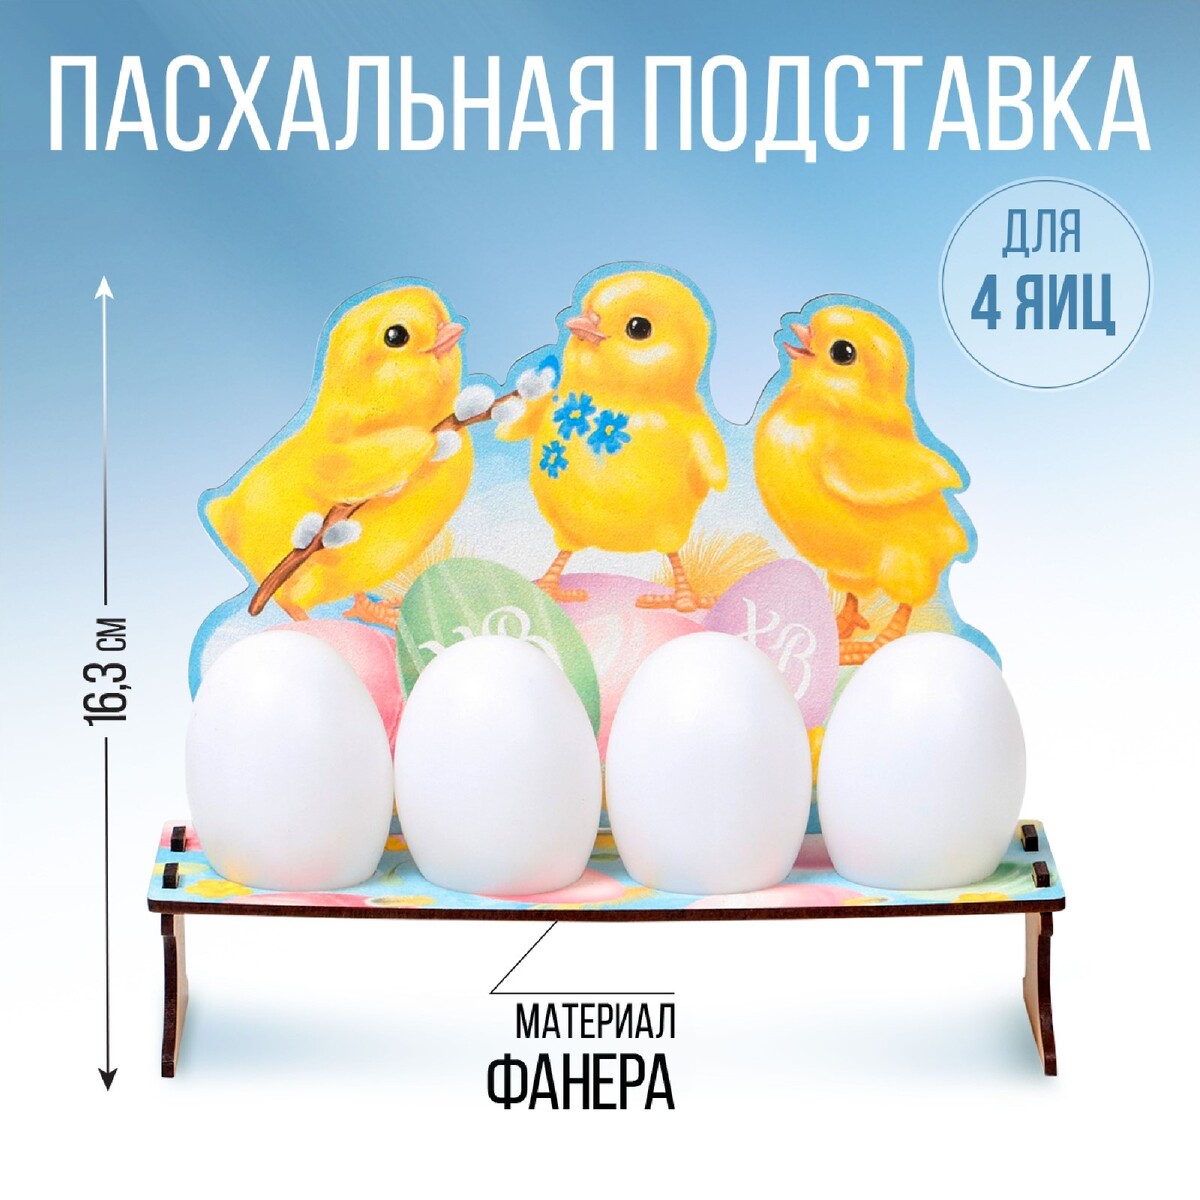 Подставка на 4 яйца на пасху открытка держатель для яйца пасхальная композиция